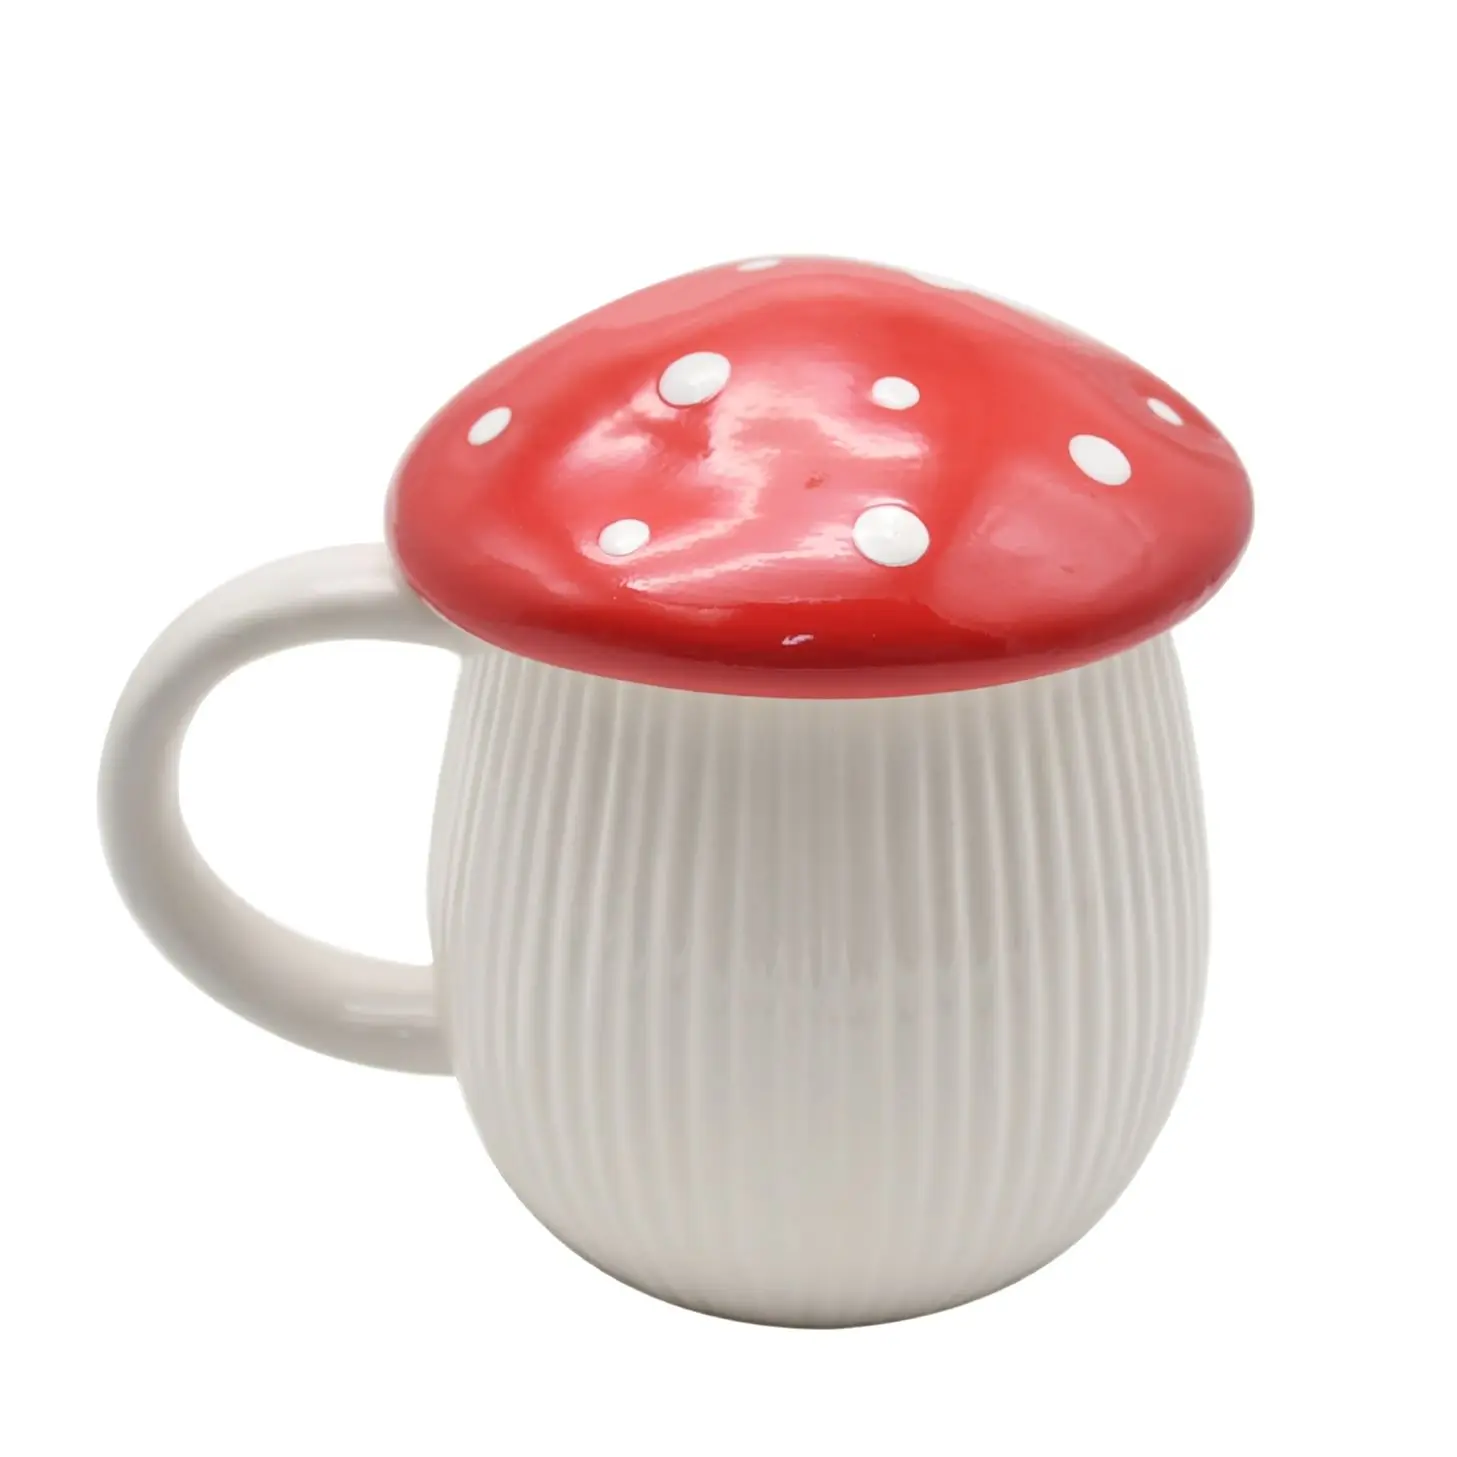 380ML Kreative Pilz Tasse Mit Deckel Kaffee Becher Tassen Keramik Tassen Cute Wasser Tasse Nette Office Home Kaffee Becher kreative Geschenk